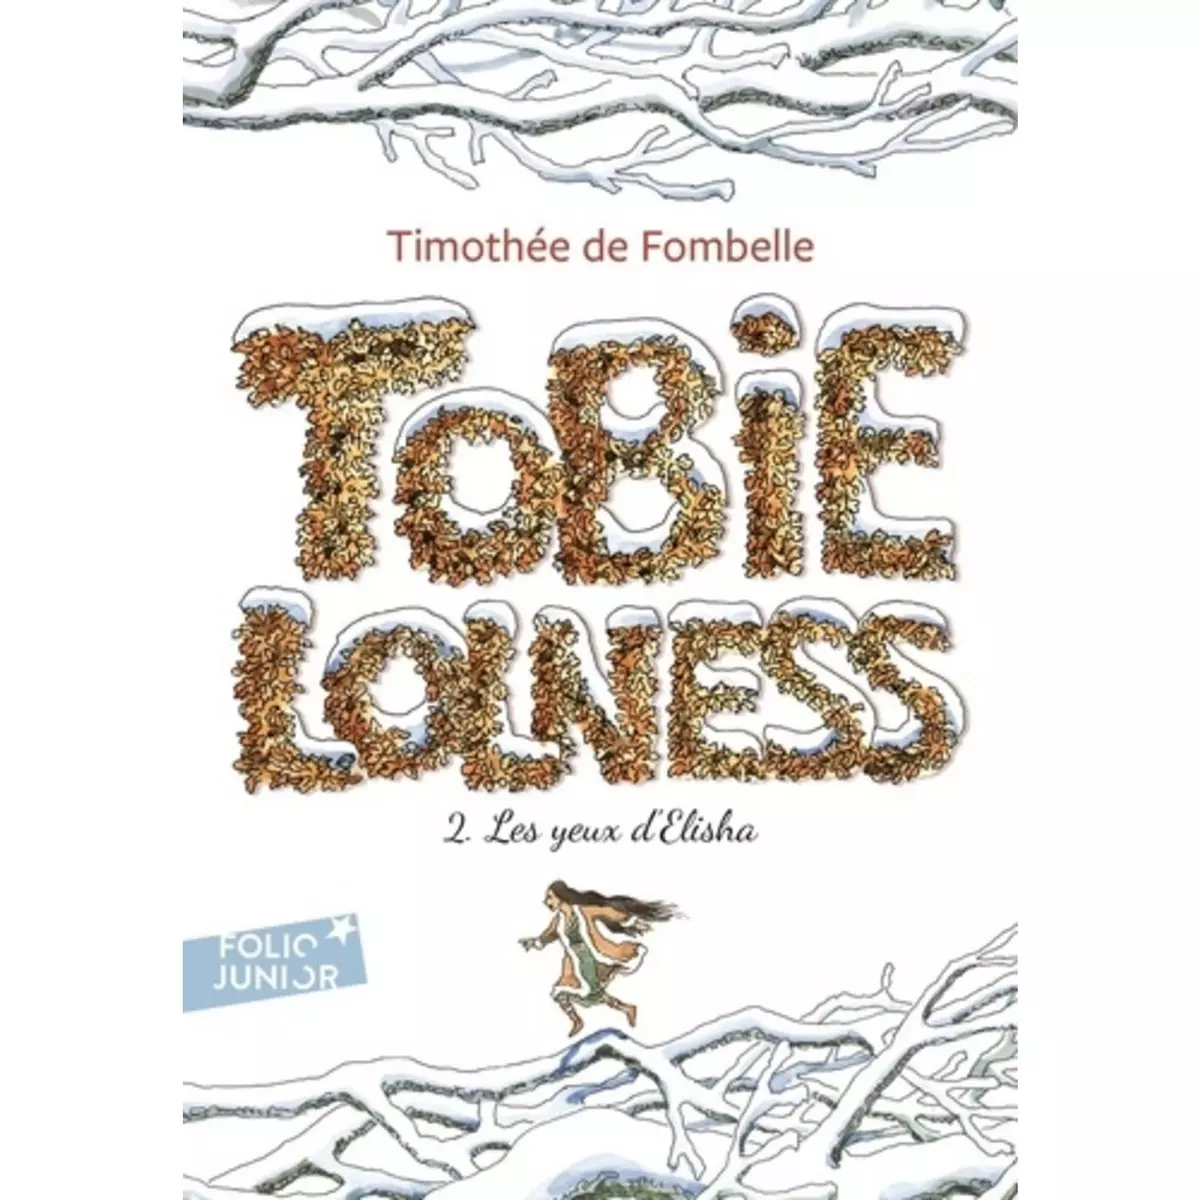  TOBIE LOLNESS TOME 2 : LES YEUX D'ELISHA, Fombelle Timothée de